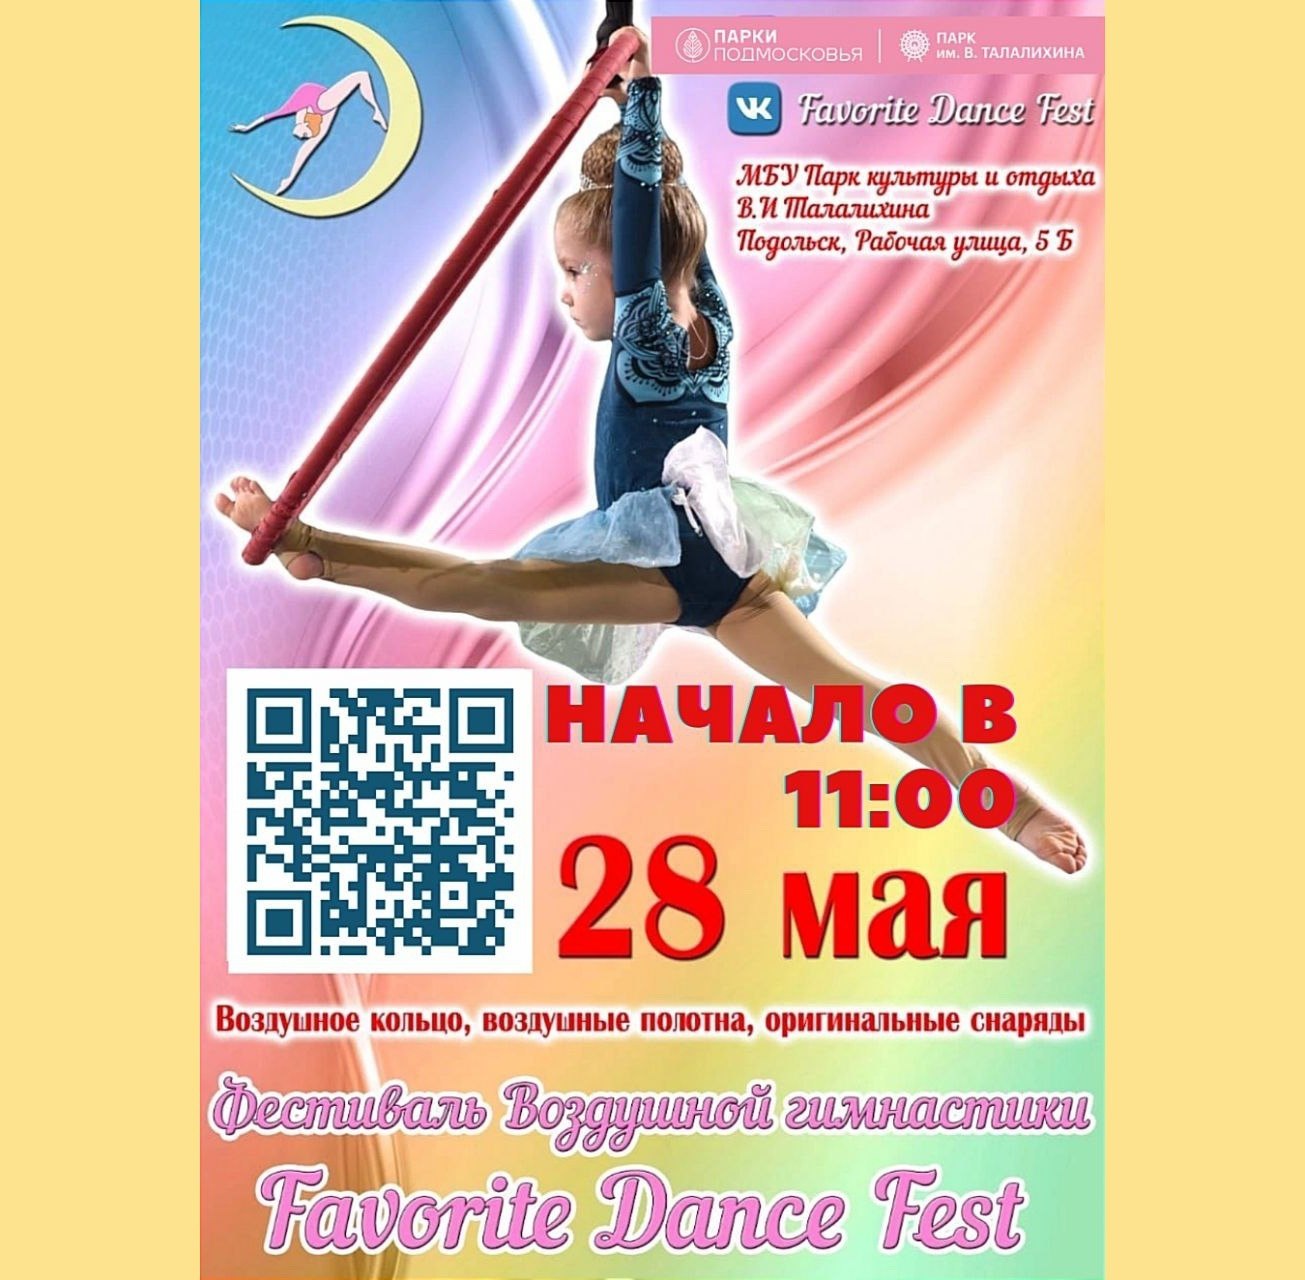 Фестиваль воздушной гимнастики Favorite Dance Fest 